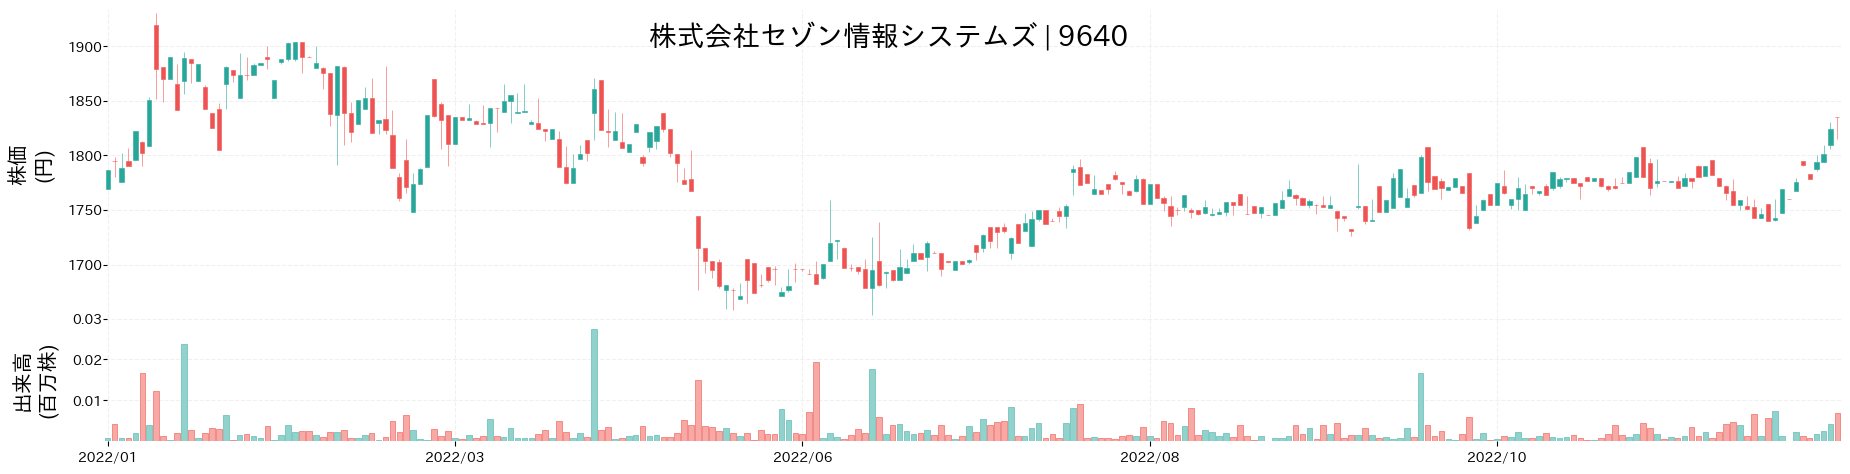 セゾン情報システムズの株価推移(2022)